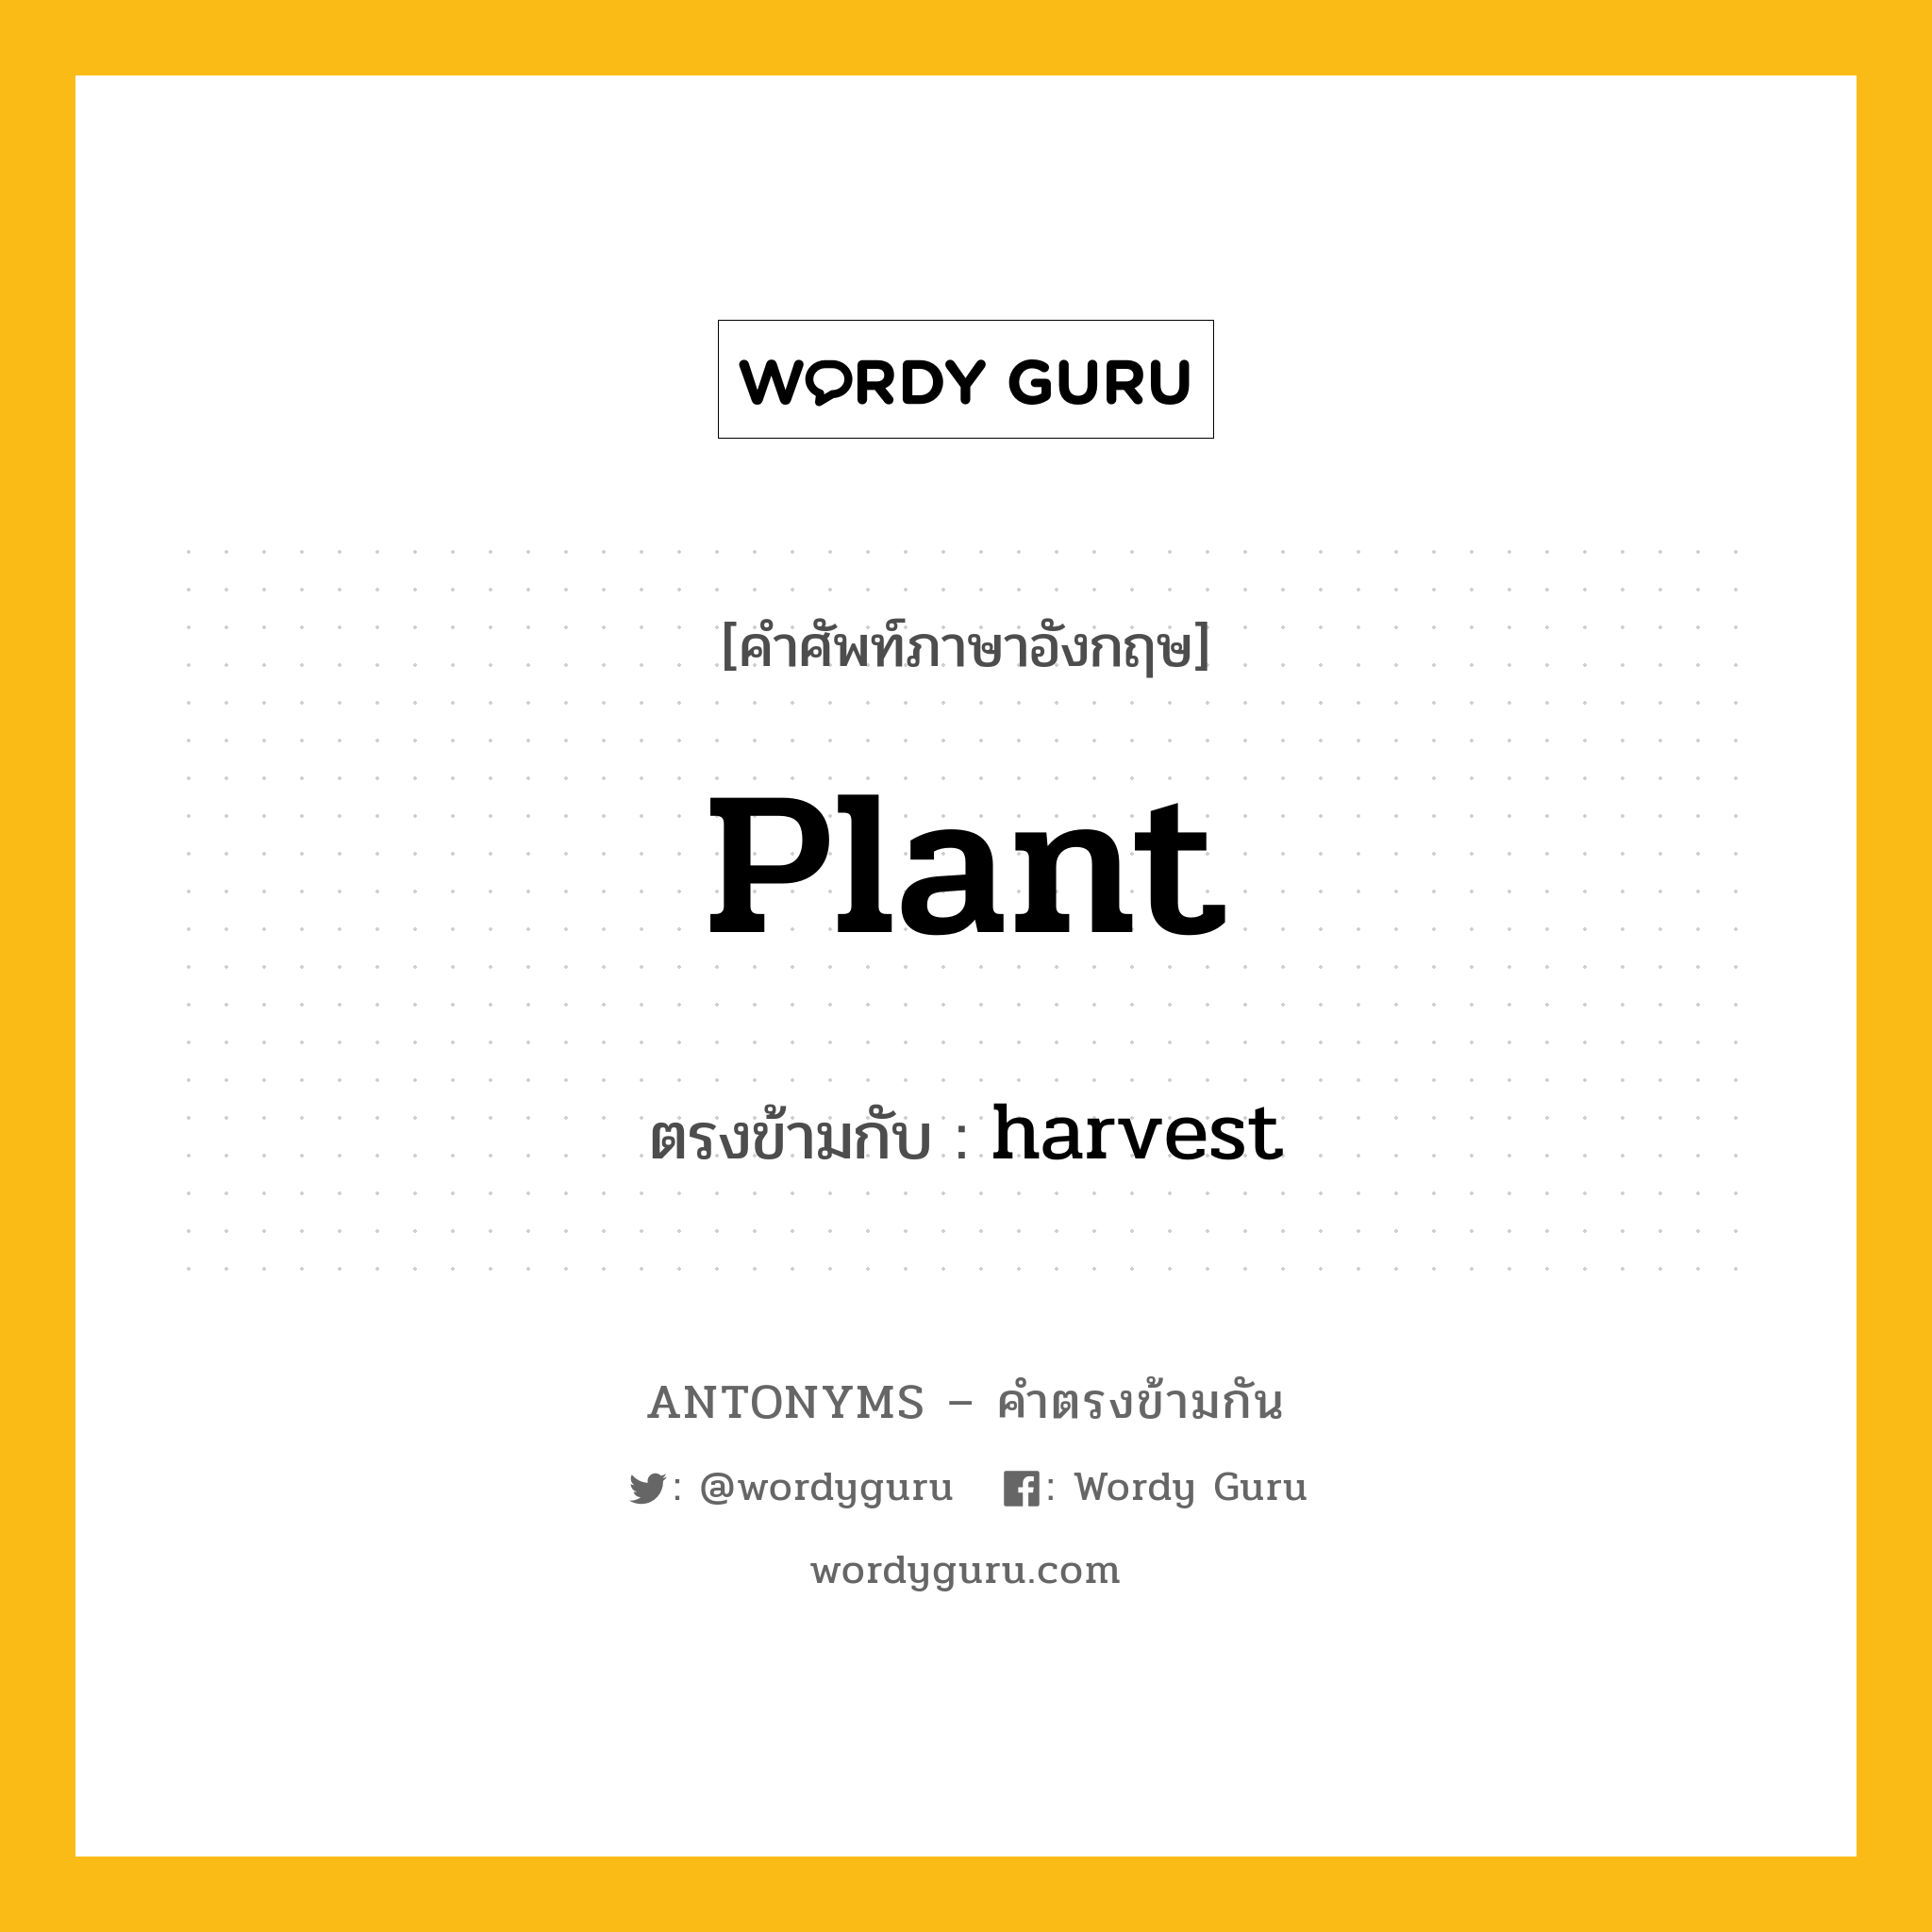 plant เป็นคำตรงข้ามกับคำไหนบ้าง?, คำศัพท์ภาษาอังกฤษ plant ตรงข้ามกับ harvest หมวด harvest